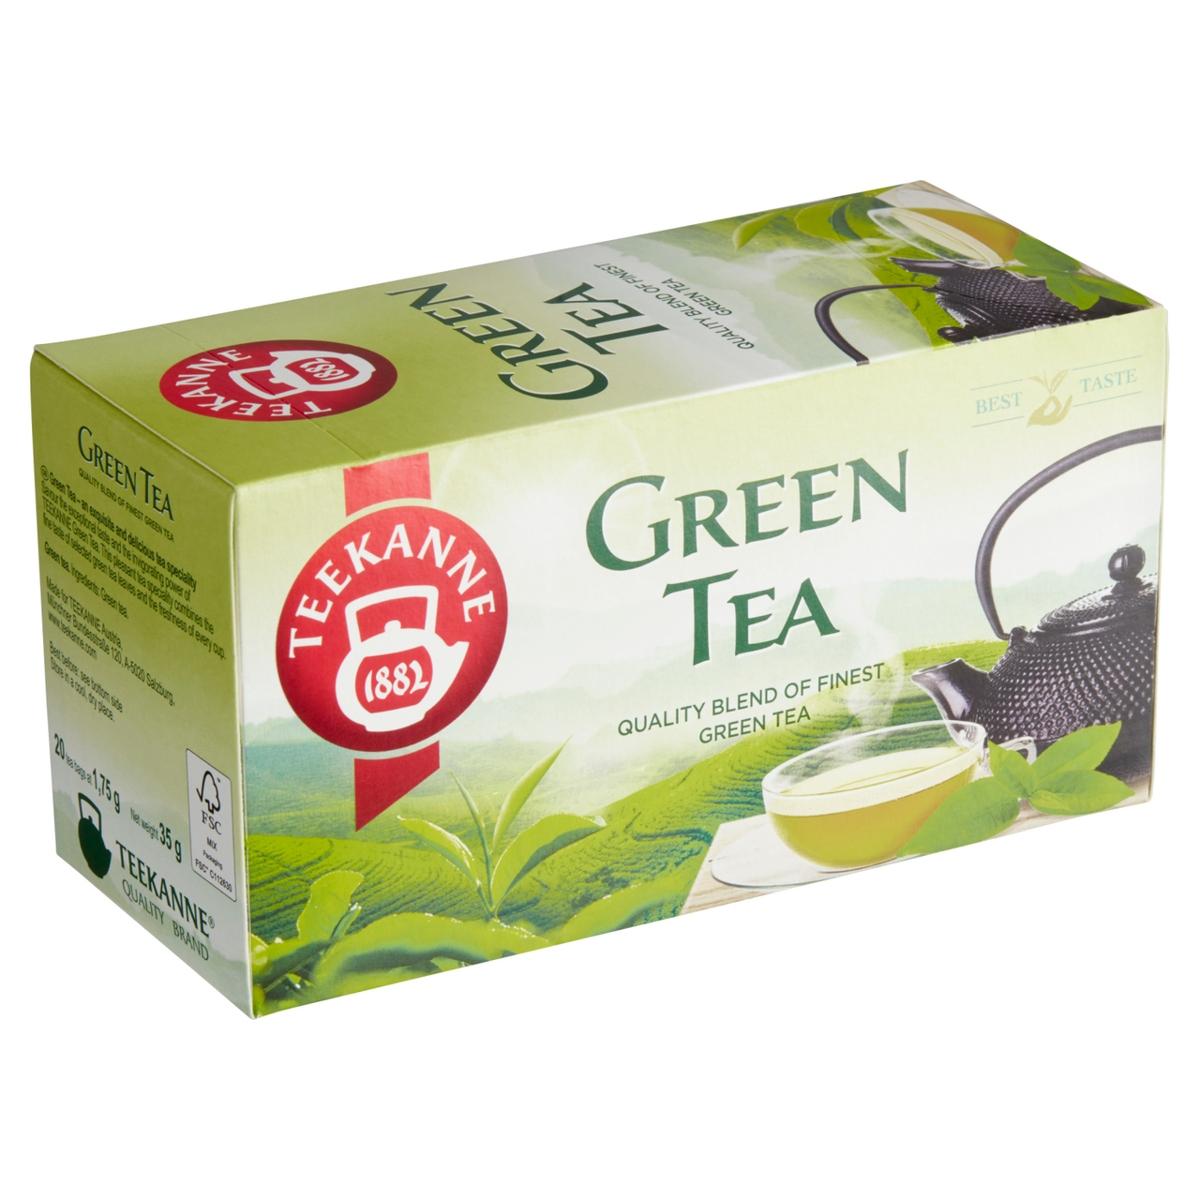 Zelený čaj Teekanne neochucený / 20 sáčků